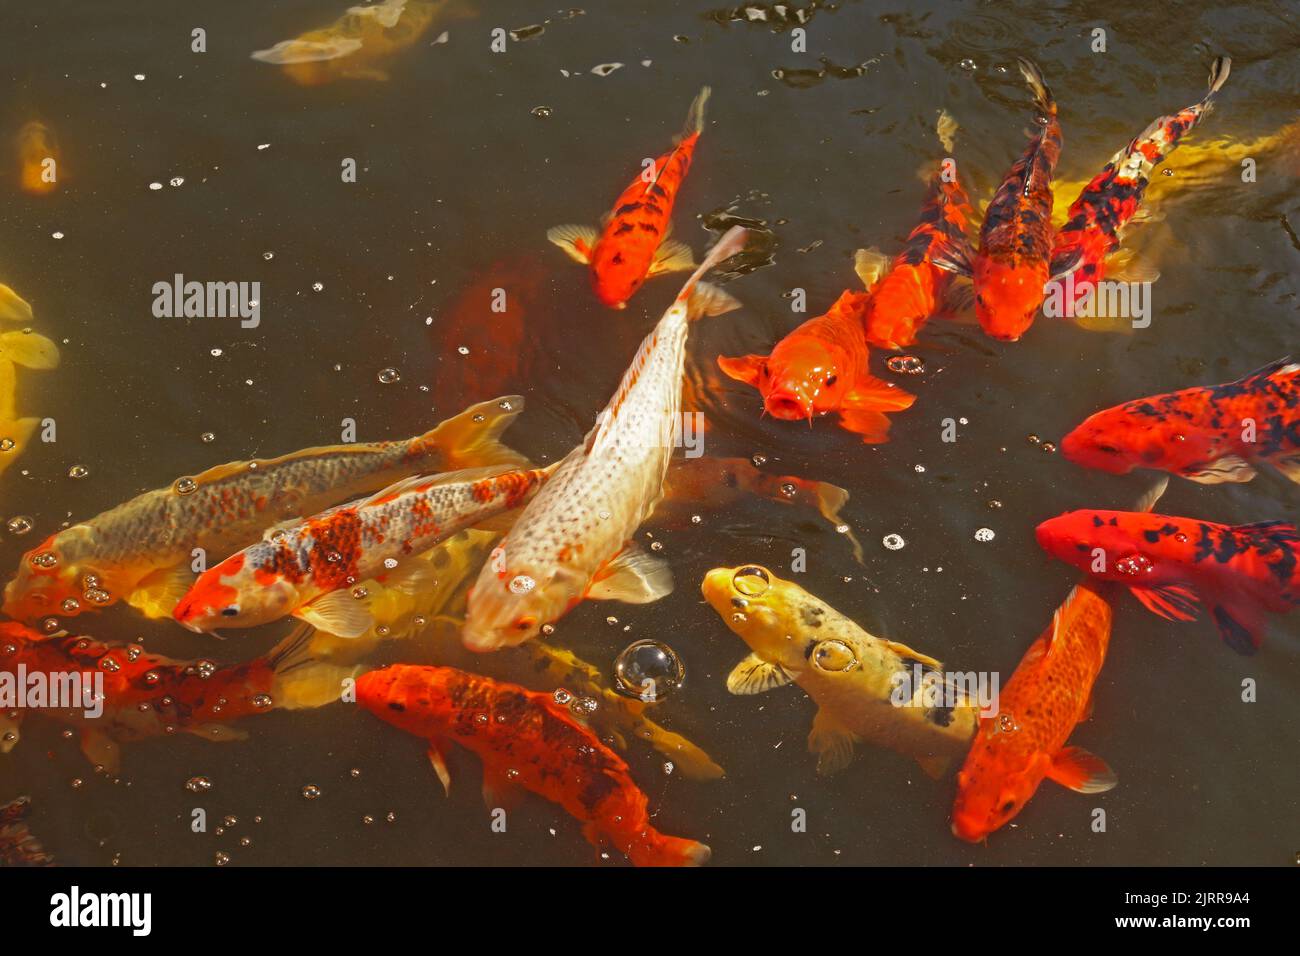 La carpa Amur roja, naranja, amarilla y negra o el koi ornamental (Cyprinus rubrofuscus) busca alimento en un estanque Foto de stock